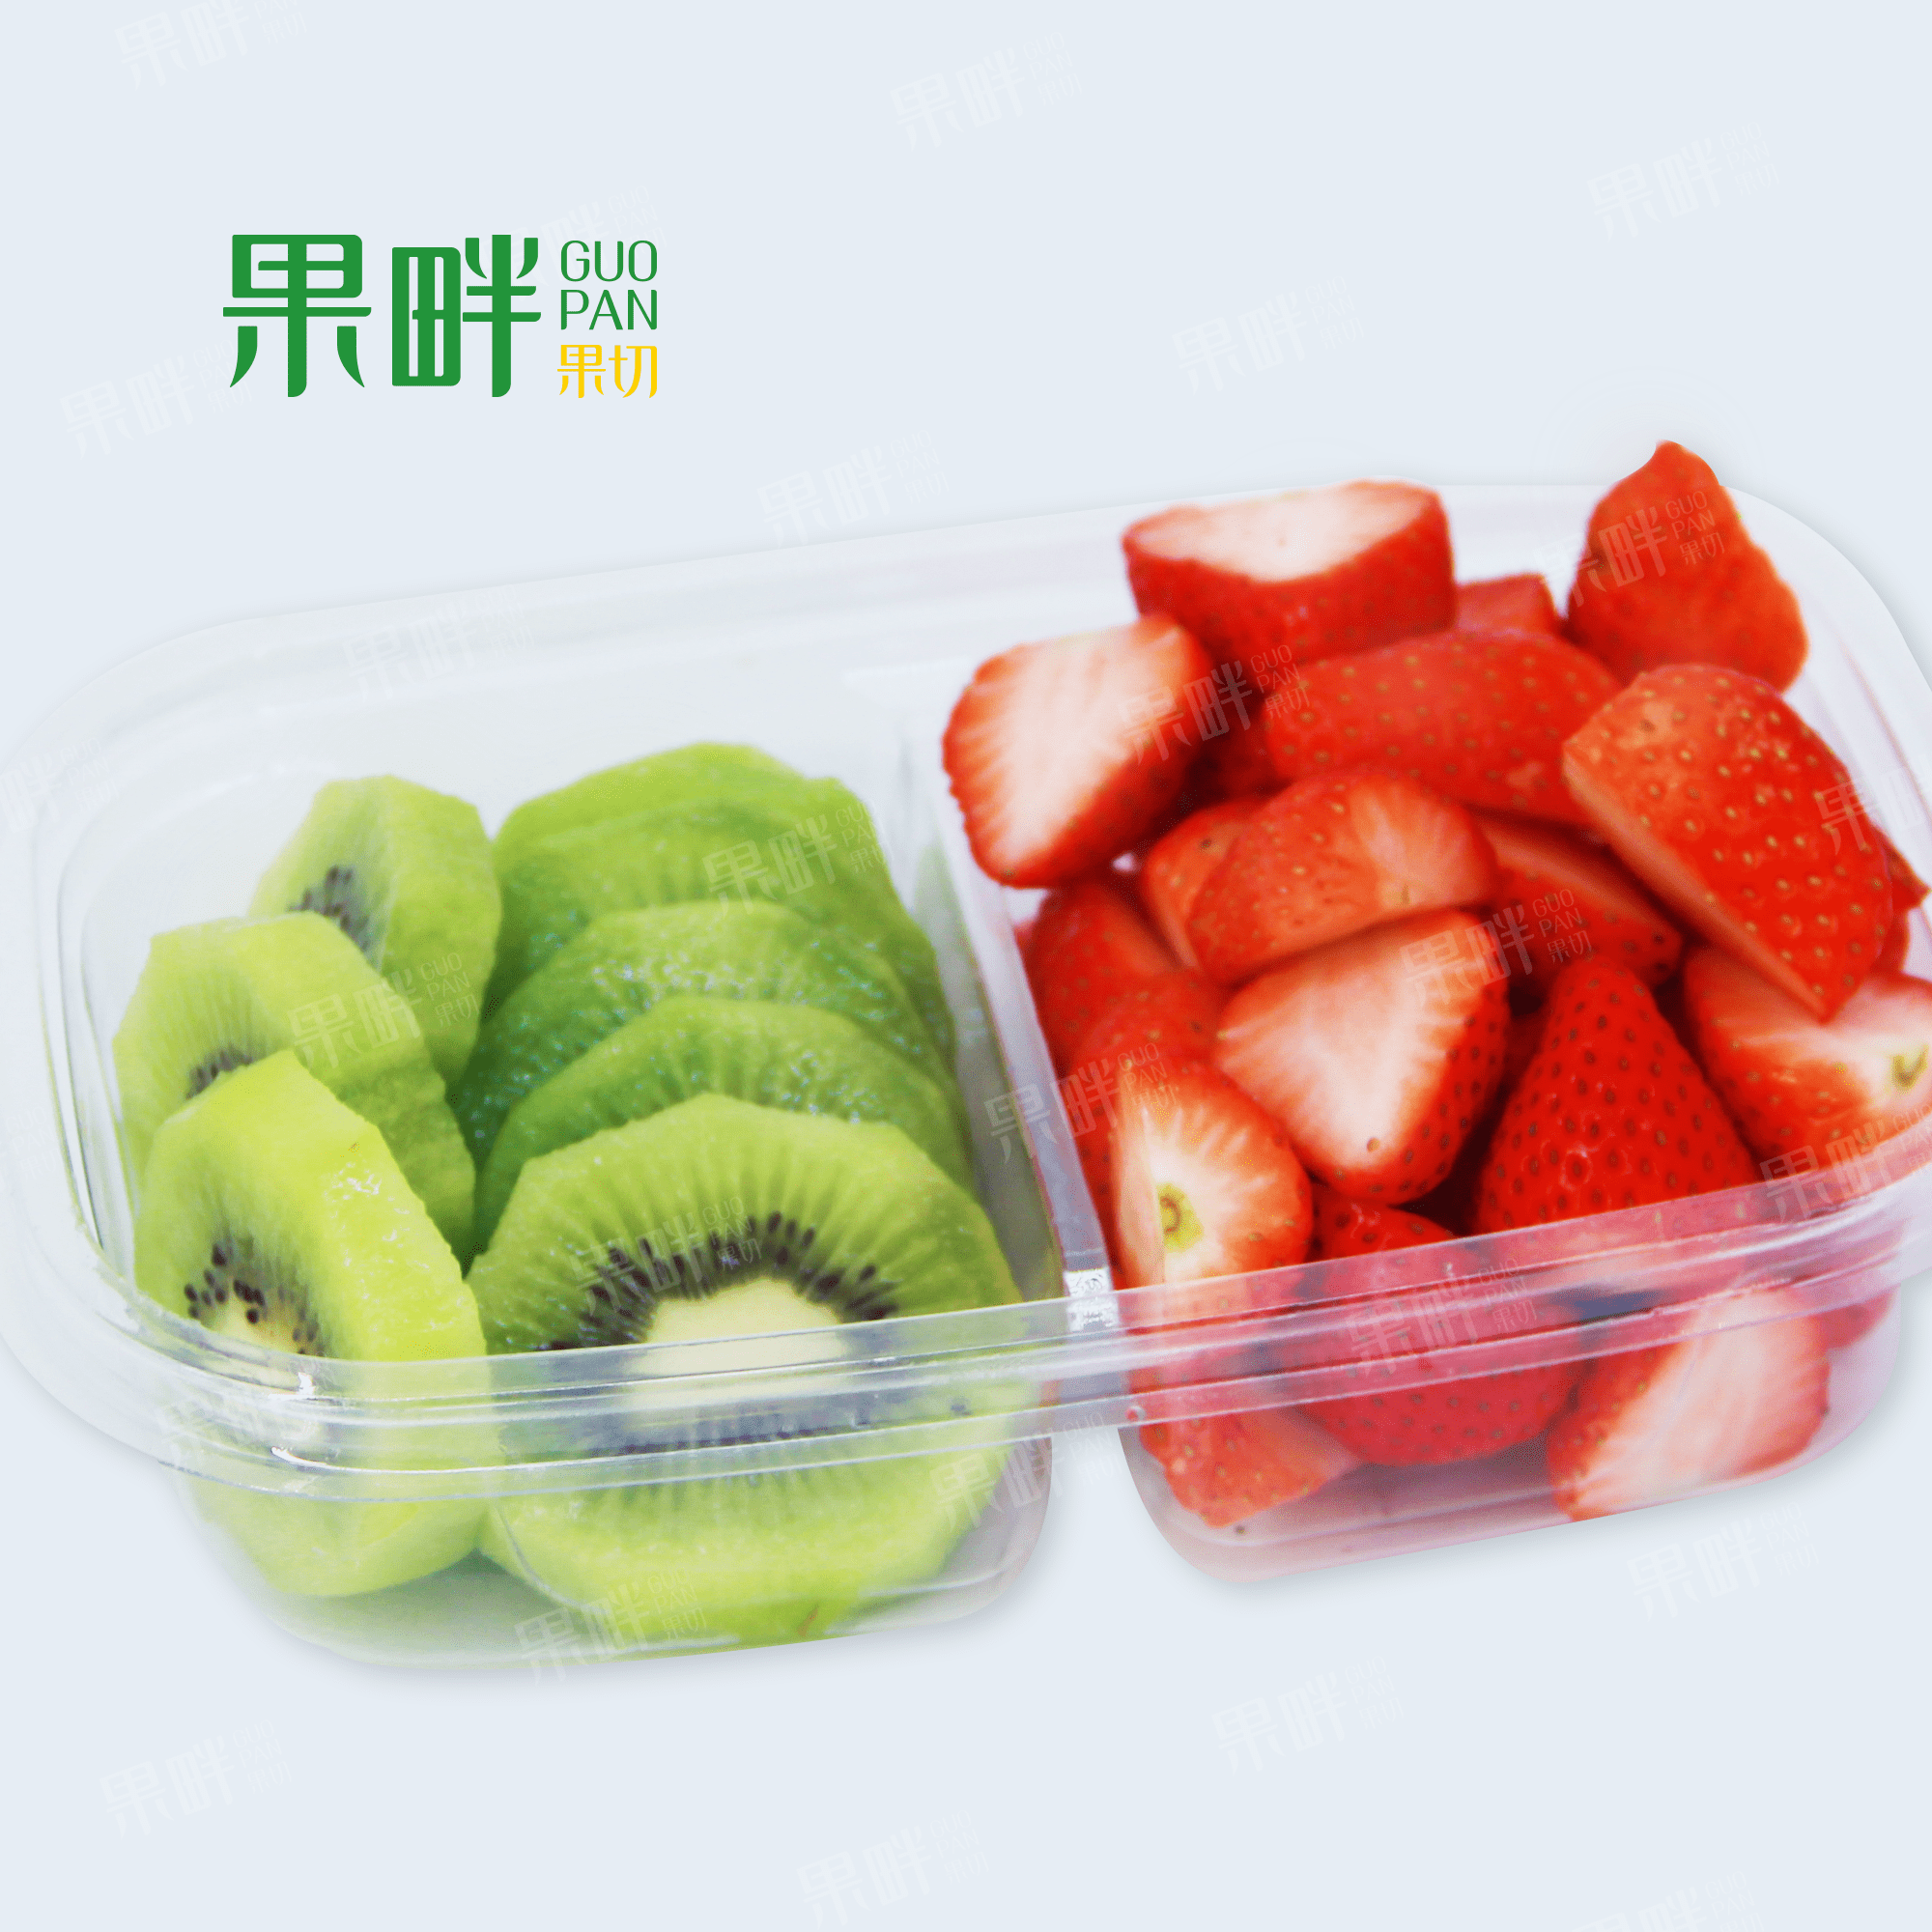 最简单漂亮的水果拼盘_最简单漂亮的水果拼盘图片大全(3)_中国排行网